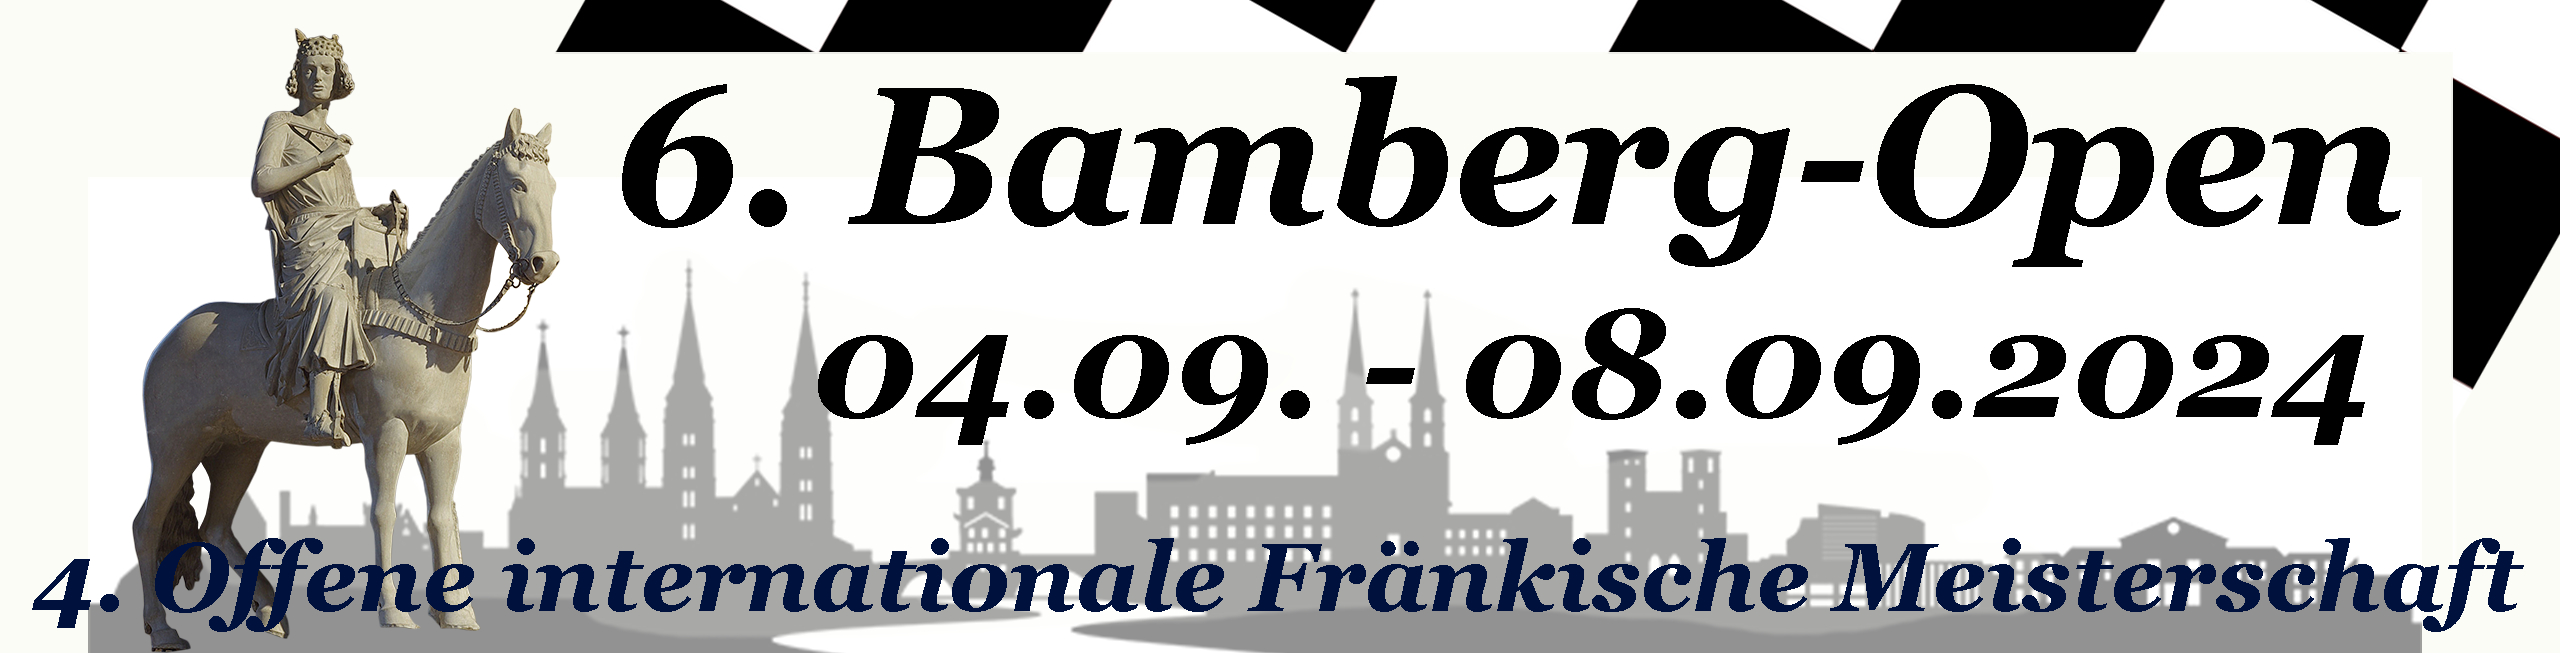 Bamberg-Open